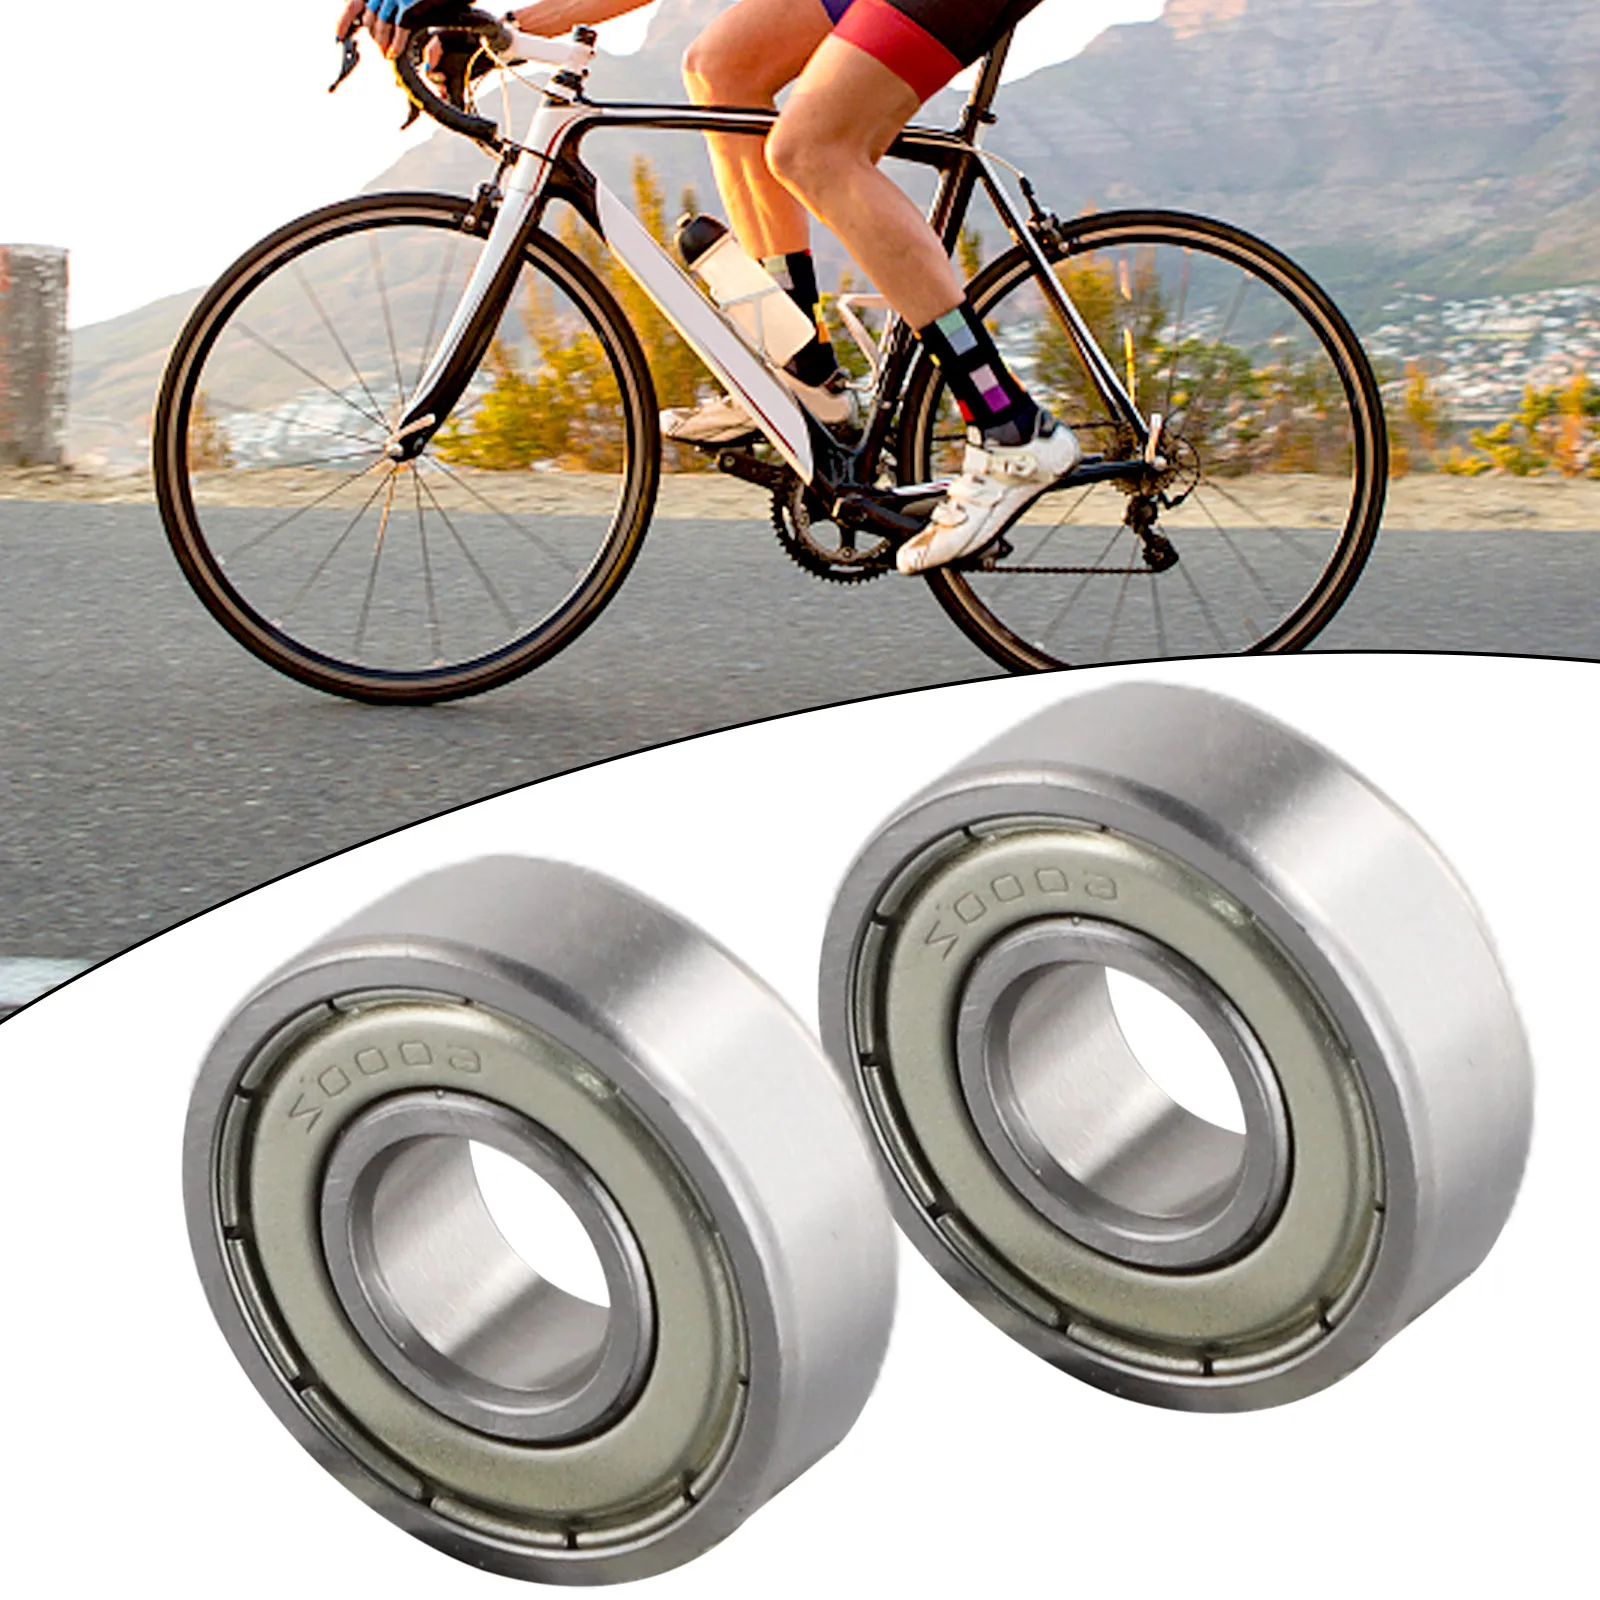 

Bicycle Bearings Bike Wheel Hub Bearings Premium Steel Bearings 6000ZZ 6000 2RS for Bike Bicycle Wheel Hub (2 Pack)